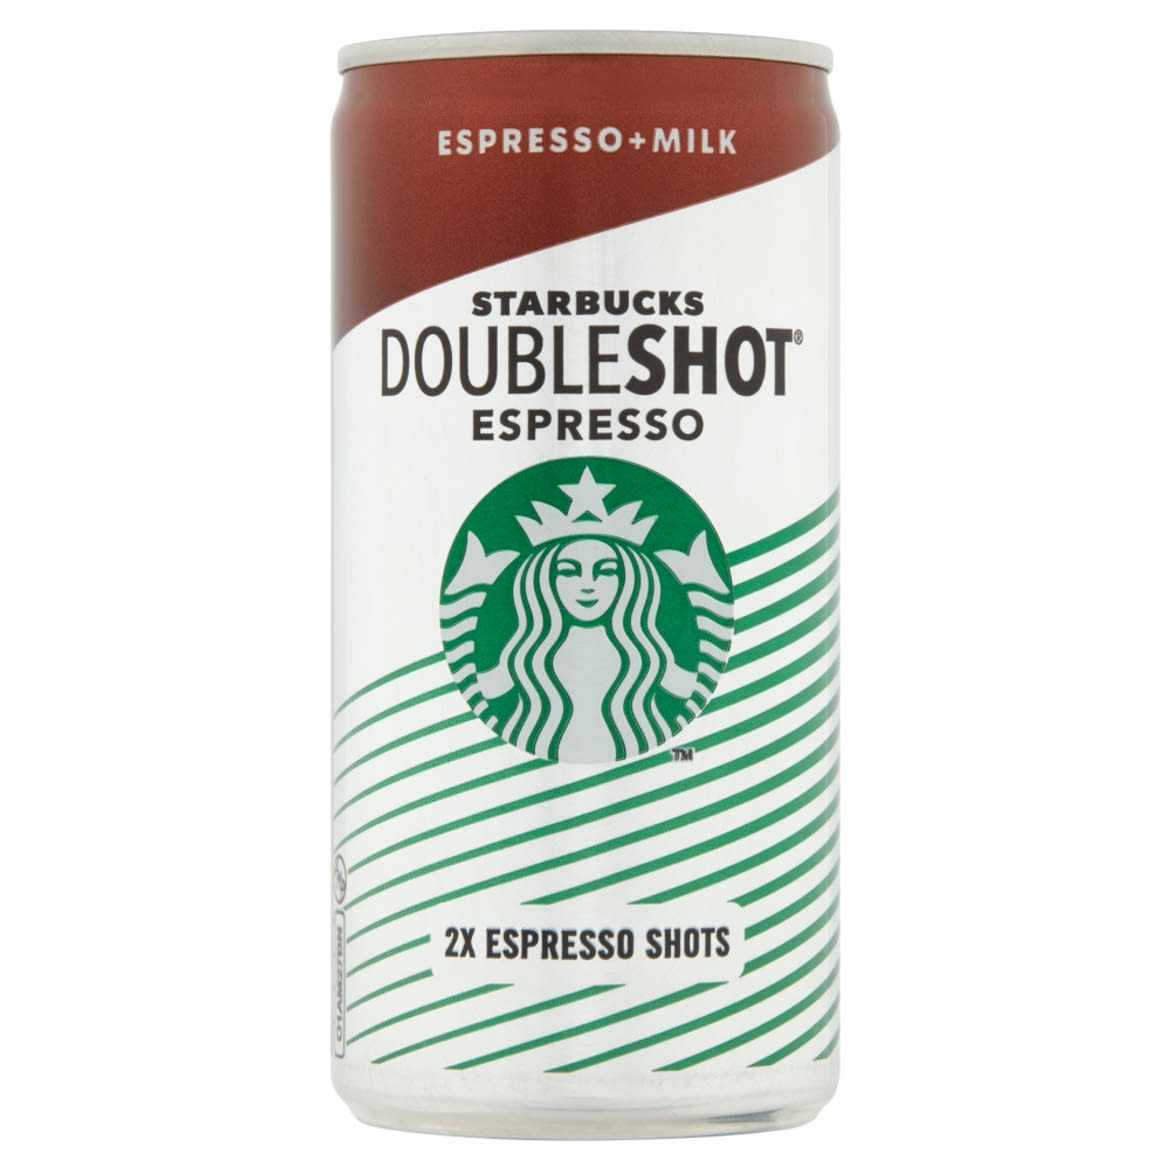 Starbucks Doubleshot Espresso Arabica kávét tartalmazó félzsíros tejital